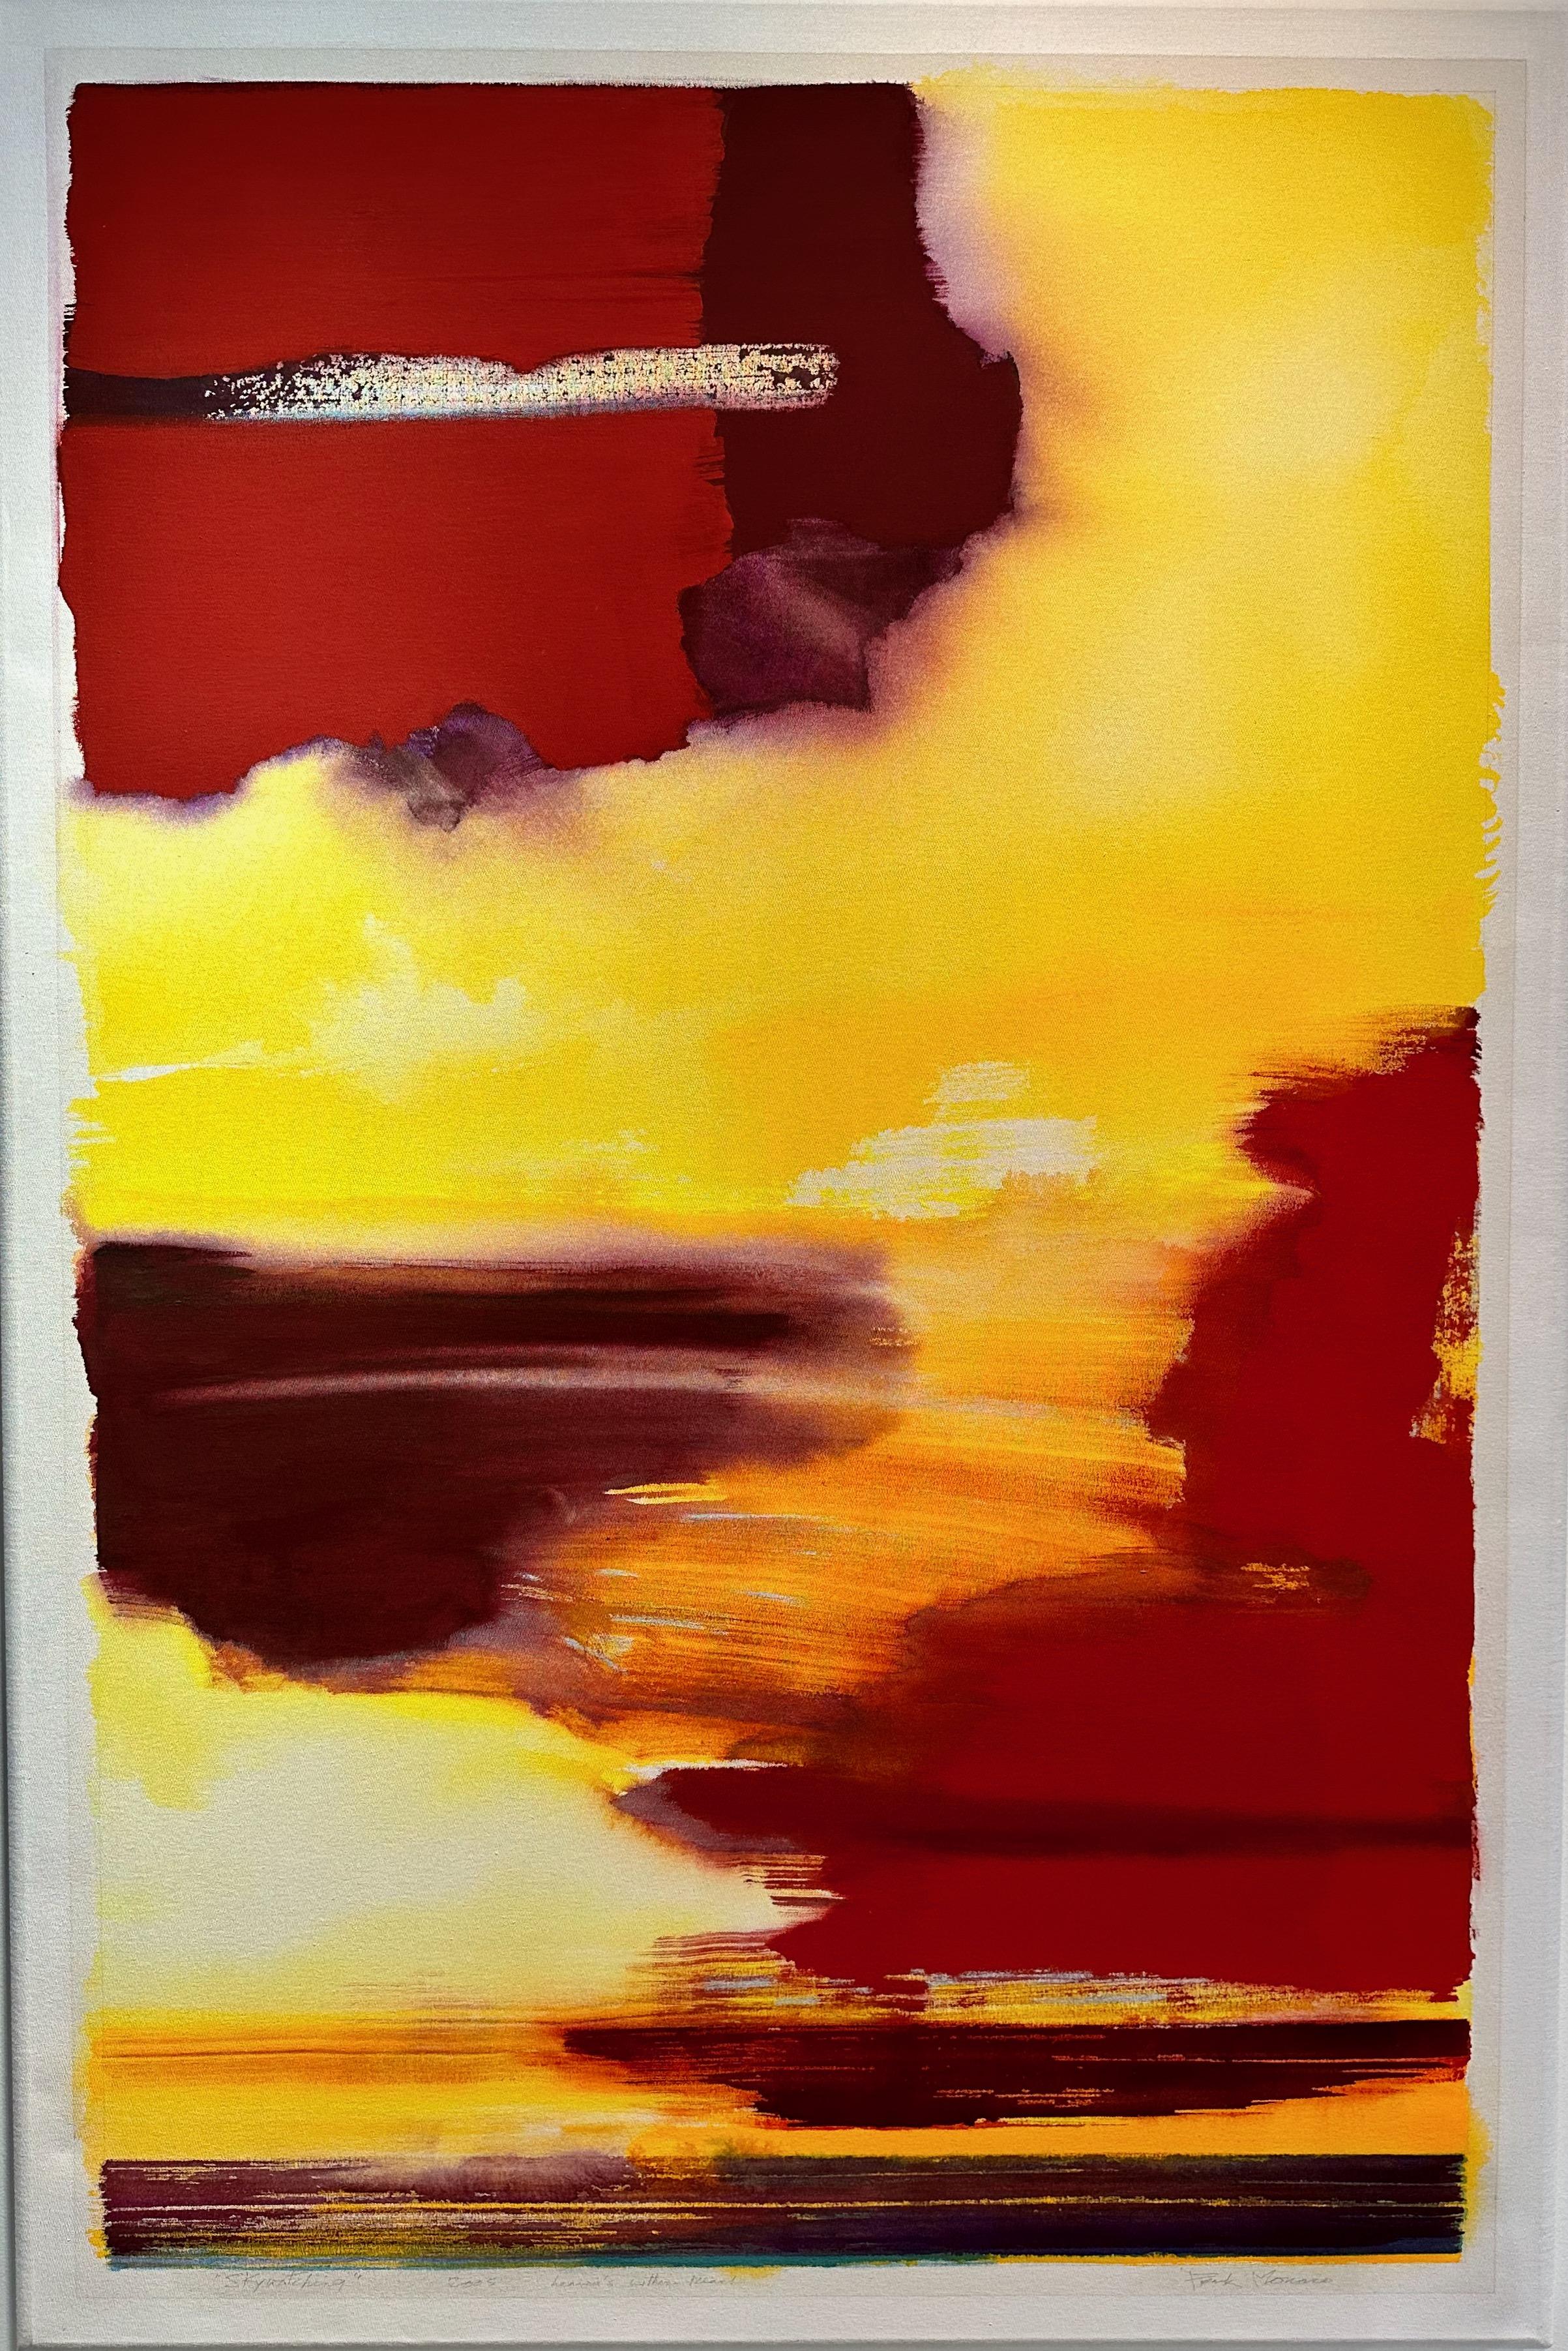 Abstract Painting Frank Monaco - Vue sur le coucher de soleil Grande peinture abstraite jaune rouge